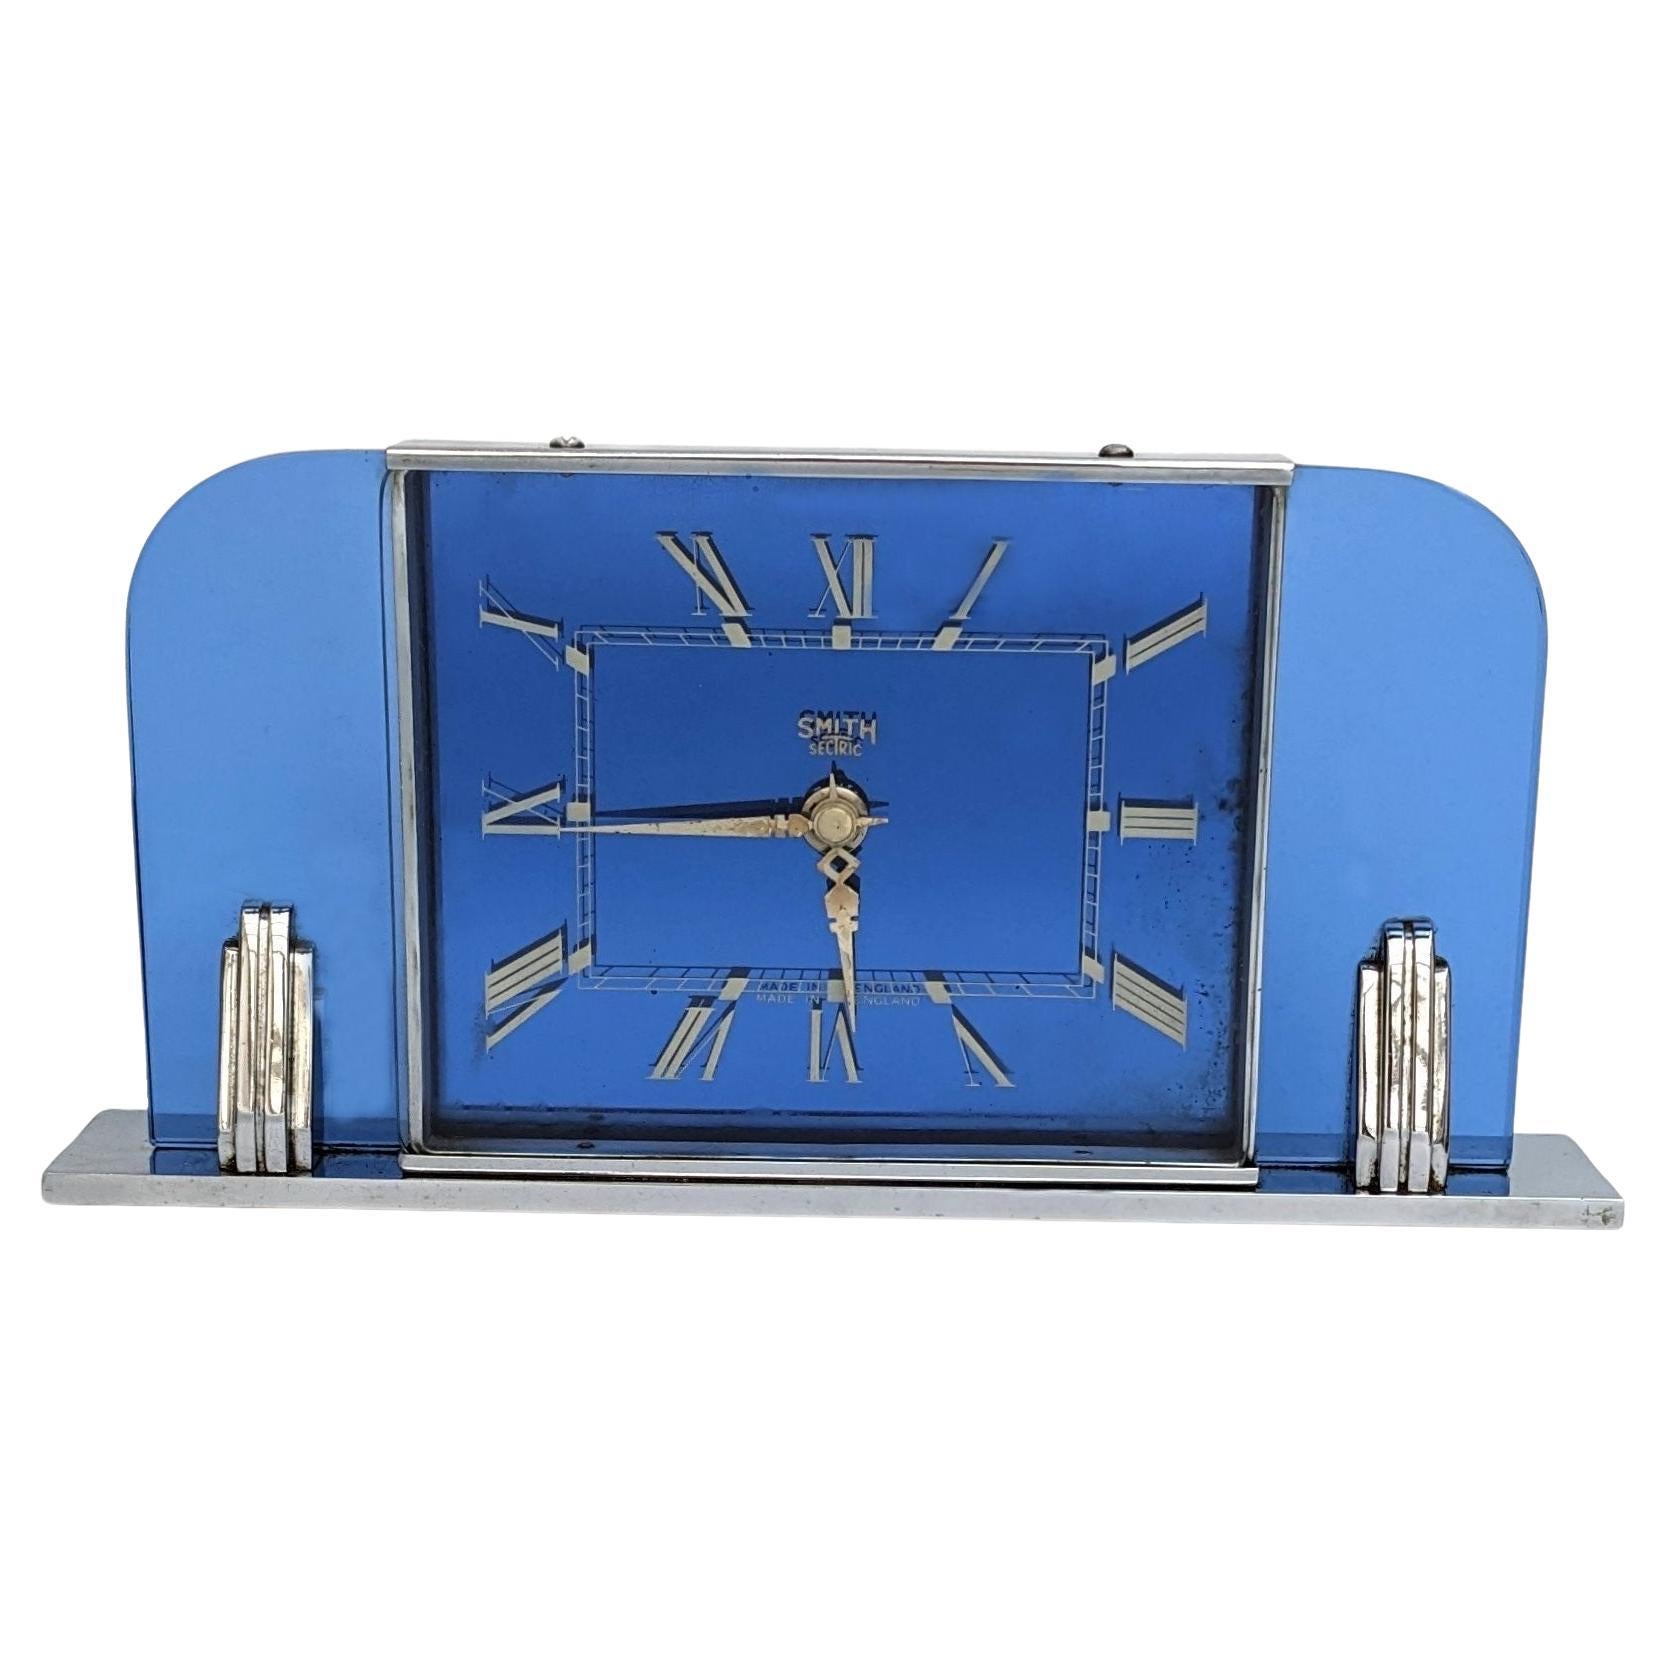 Electric Art Deco Modernistische elektrische Uhr aus blauem Glas von Smiths Clockmakers, um 1930